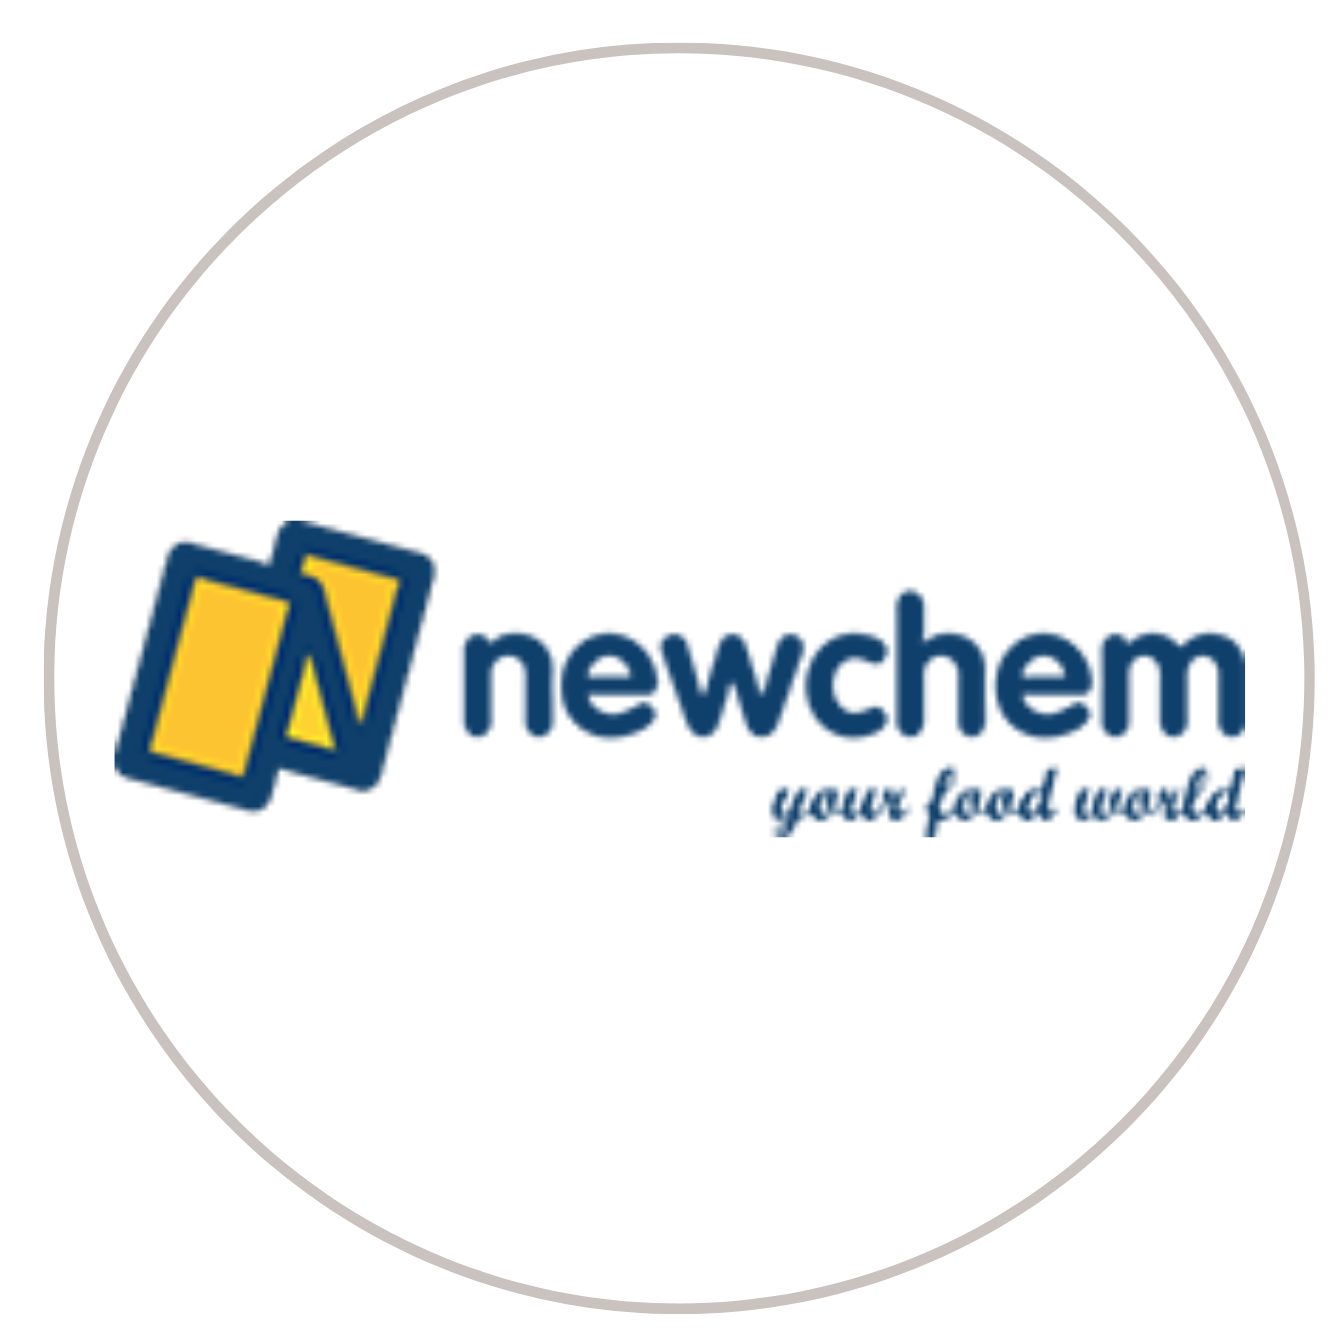 Newchem